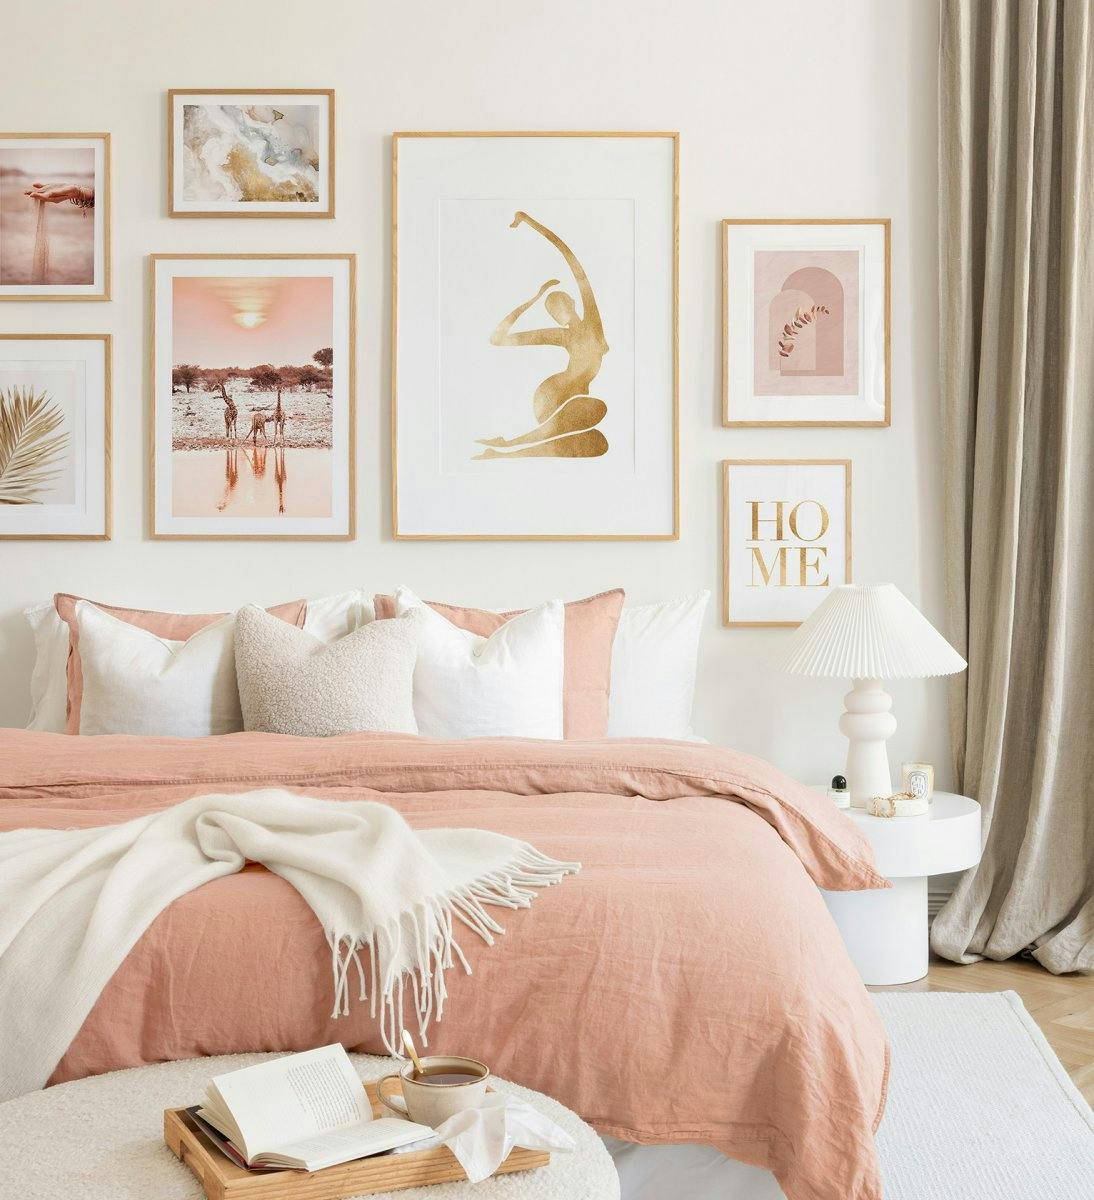 Une décoration murale aux tons rose pâle et beige dans des cadres en chêne crée une ambiance harmonieuse dans votre chambre.